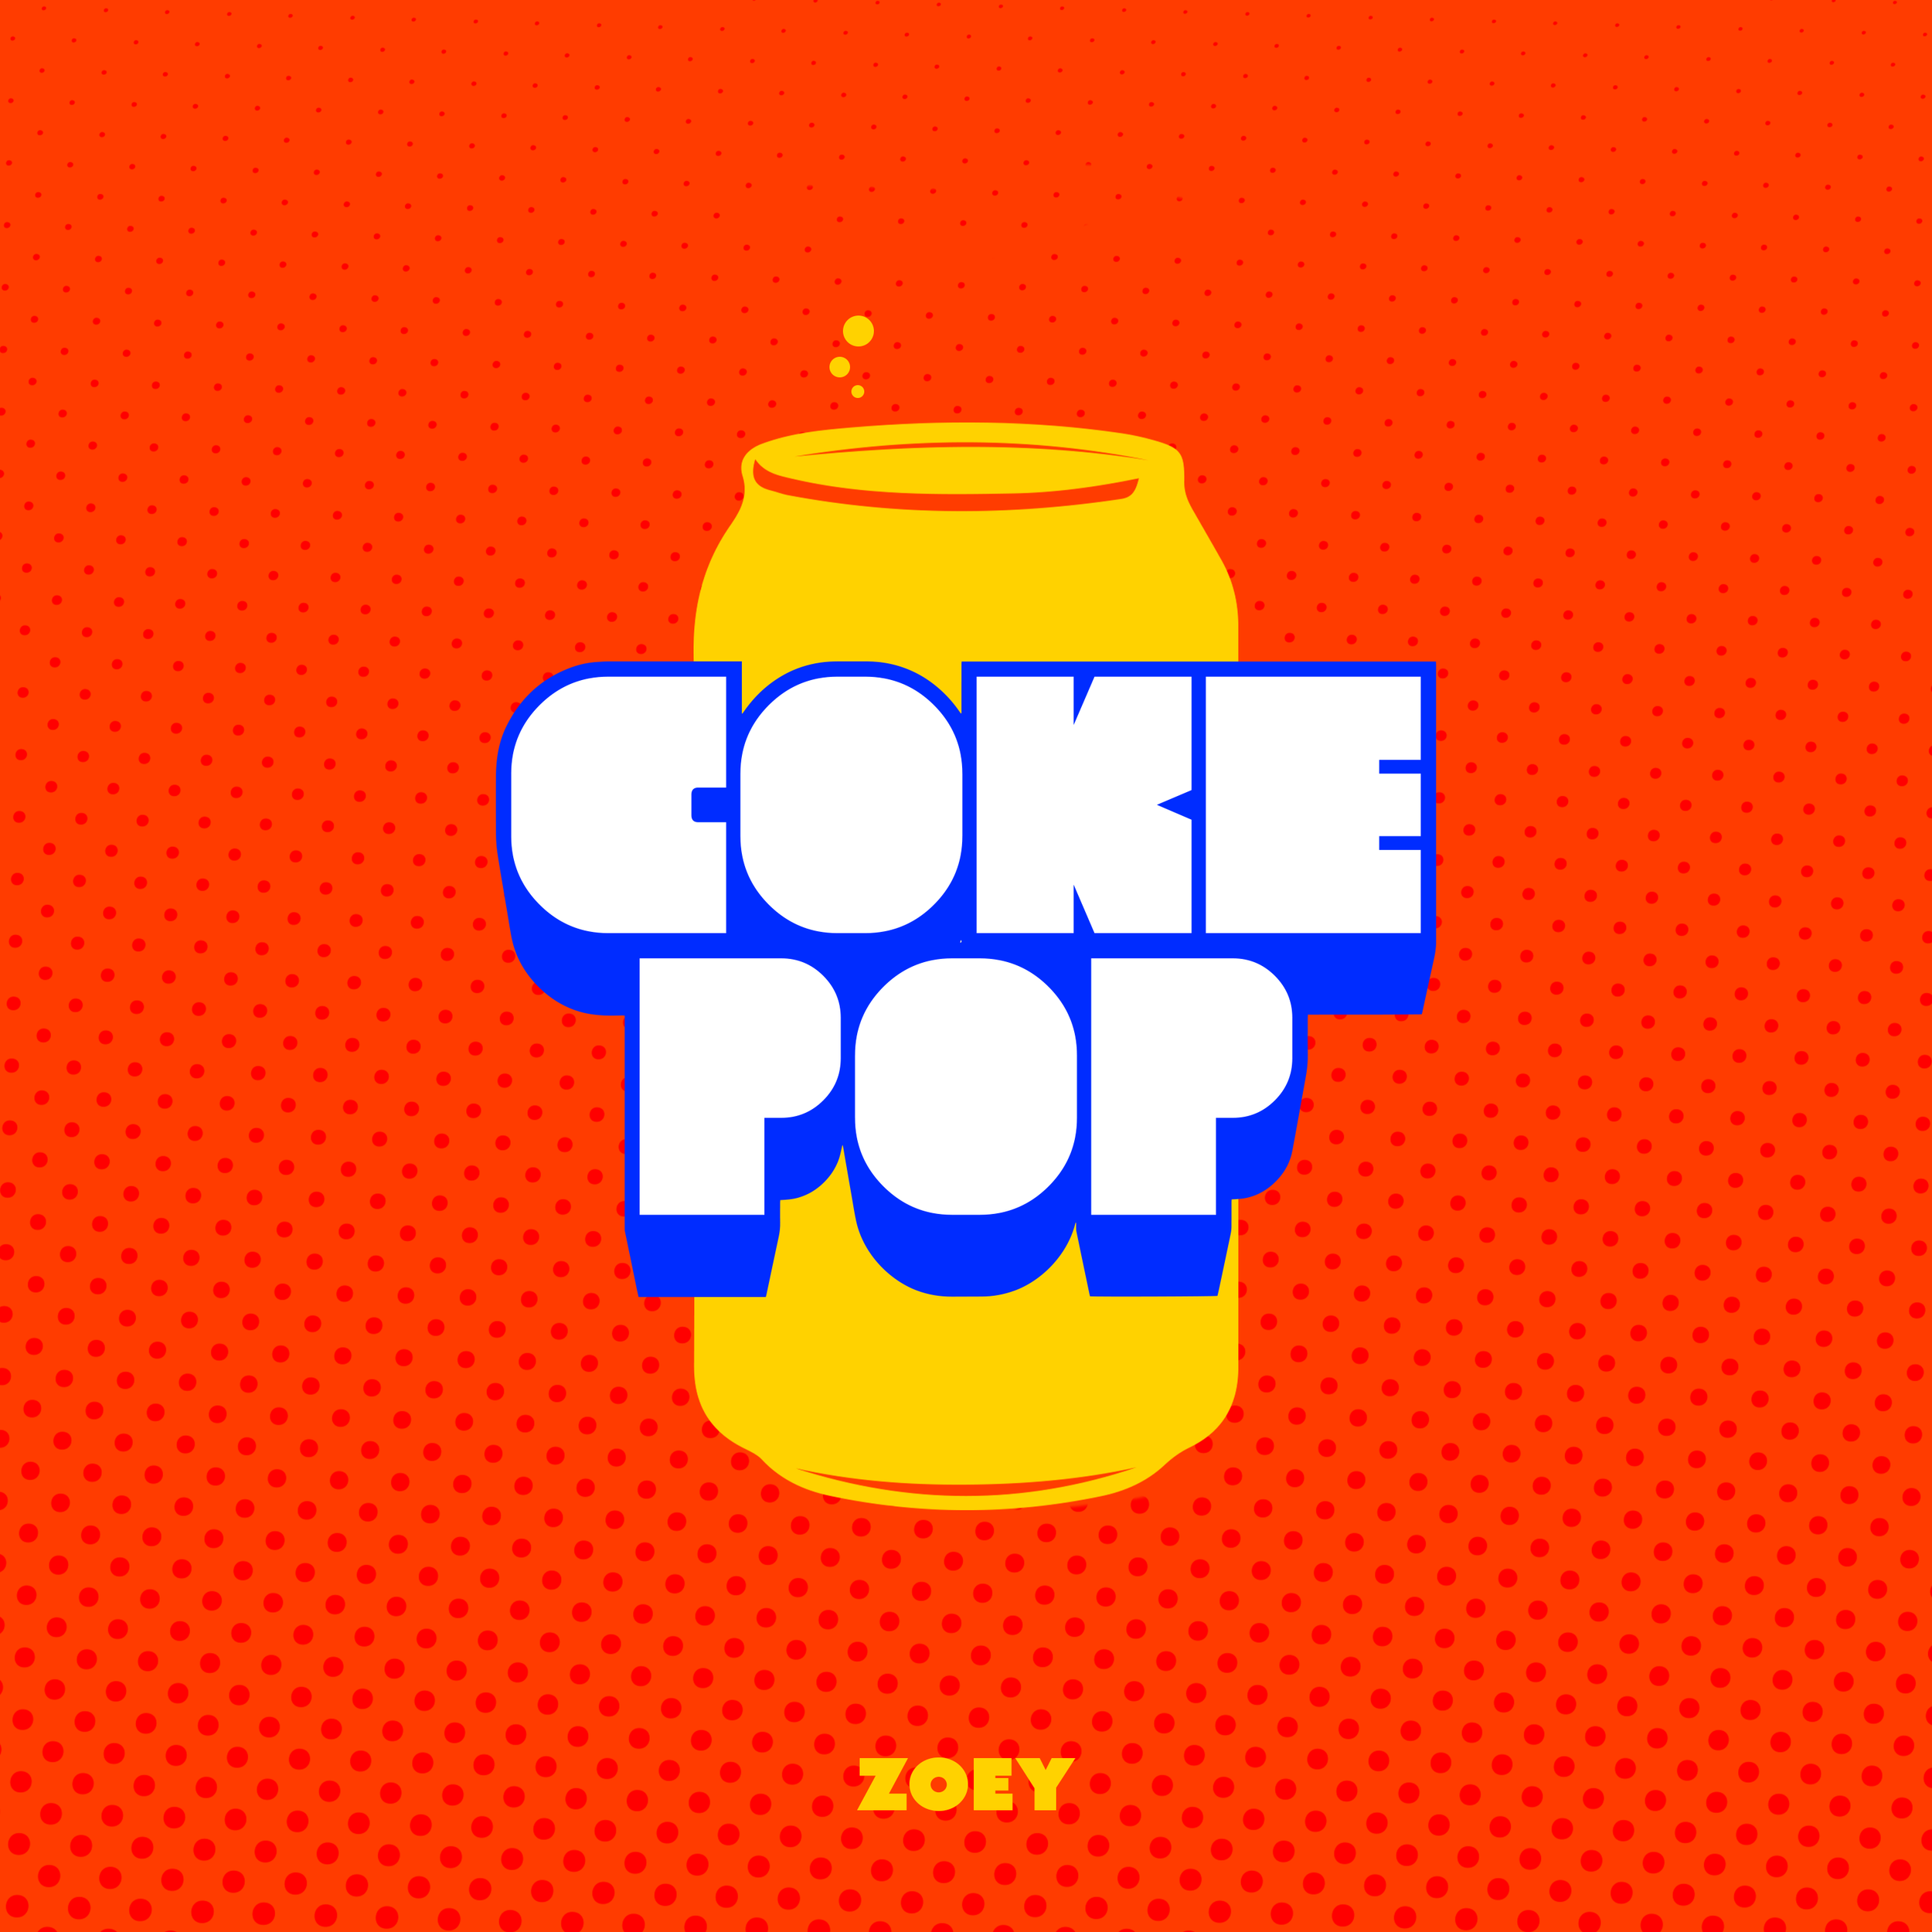 Coke Pop Zoey.png